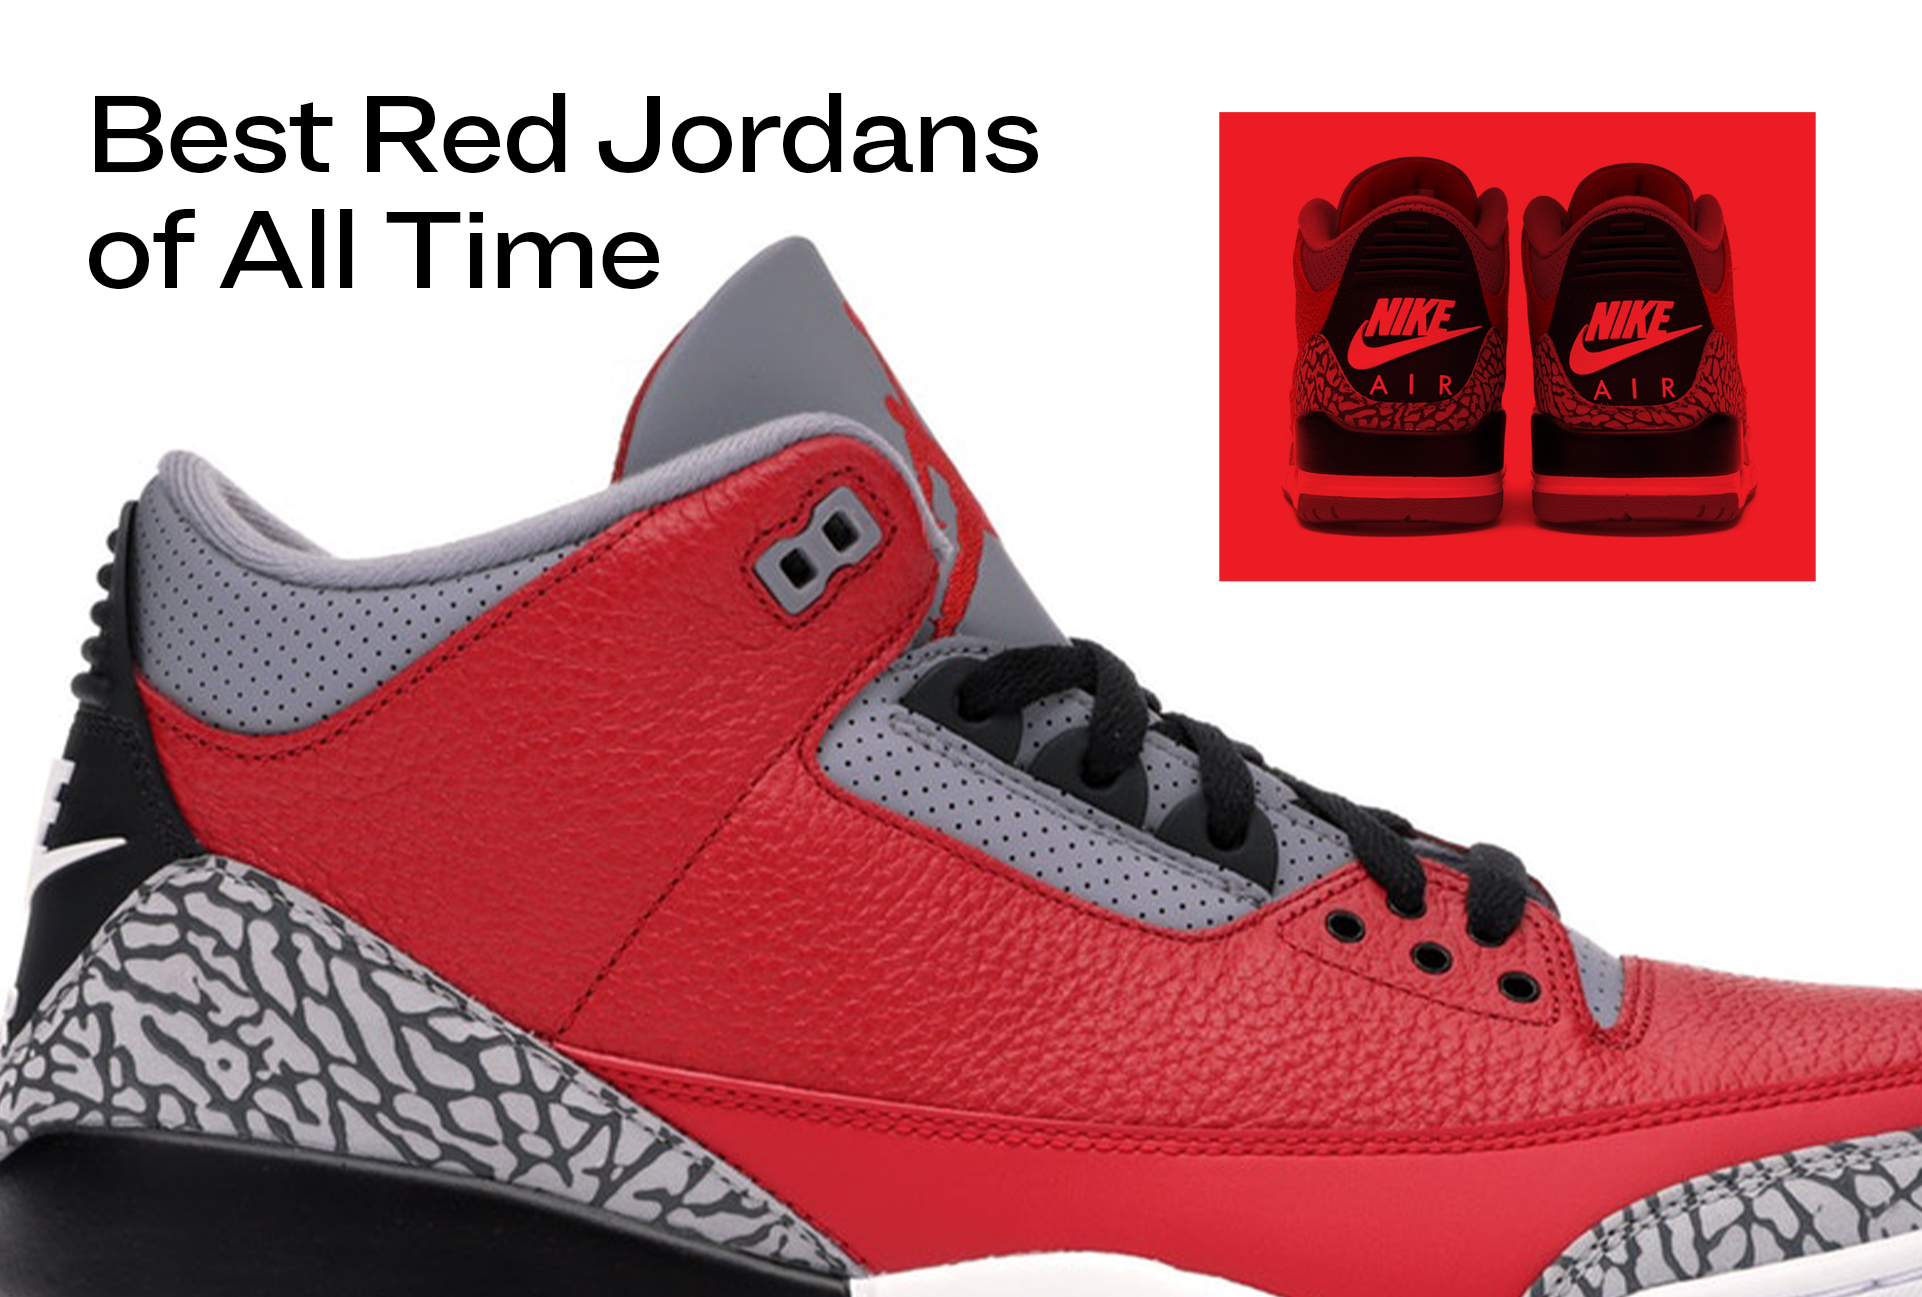 Nike's new 'League of Legends' range includes special Jordans